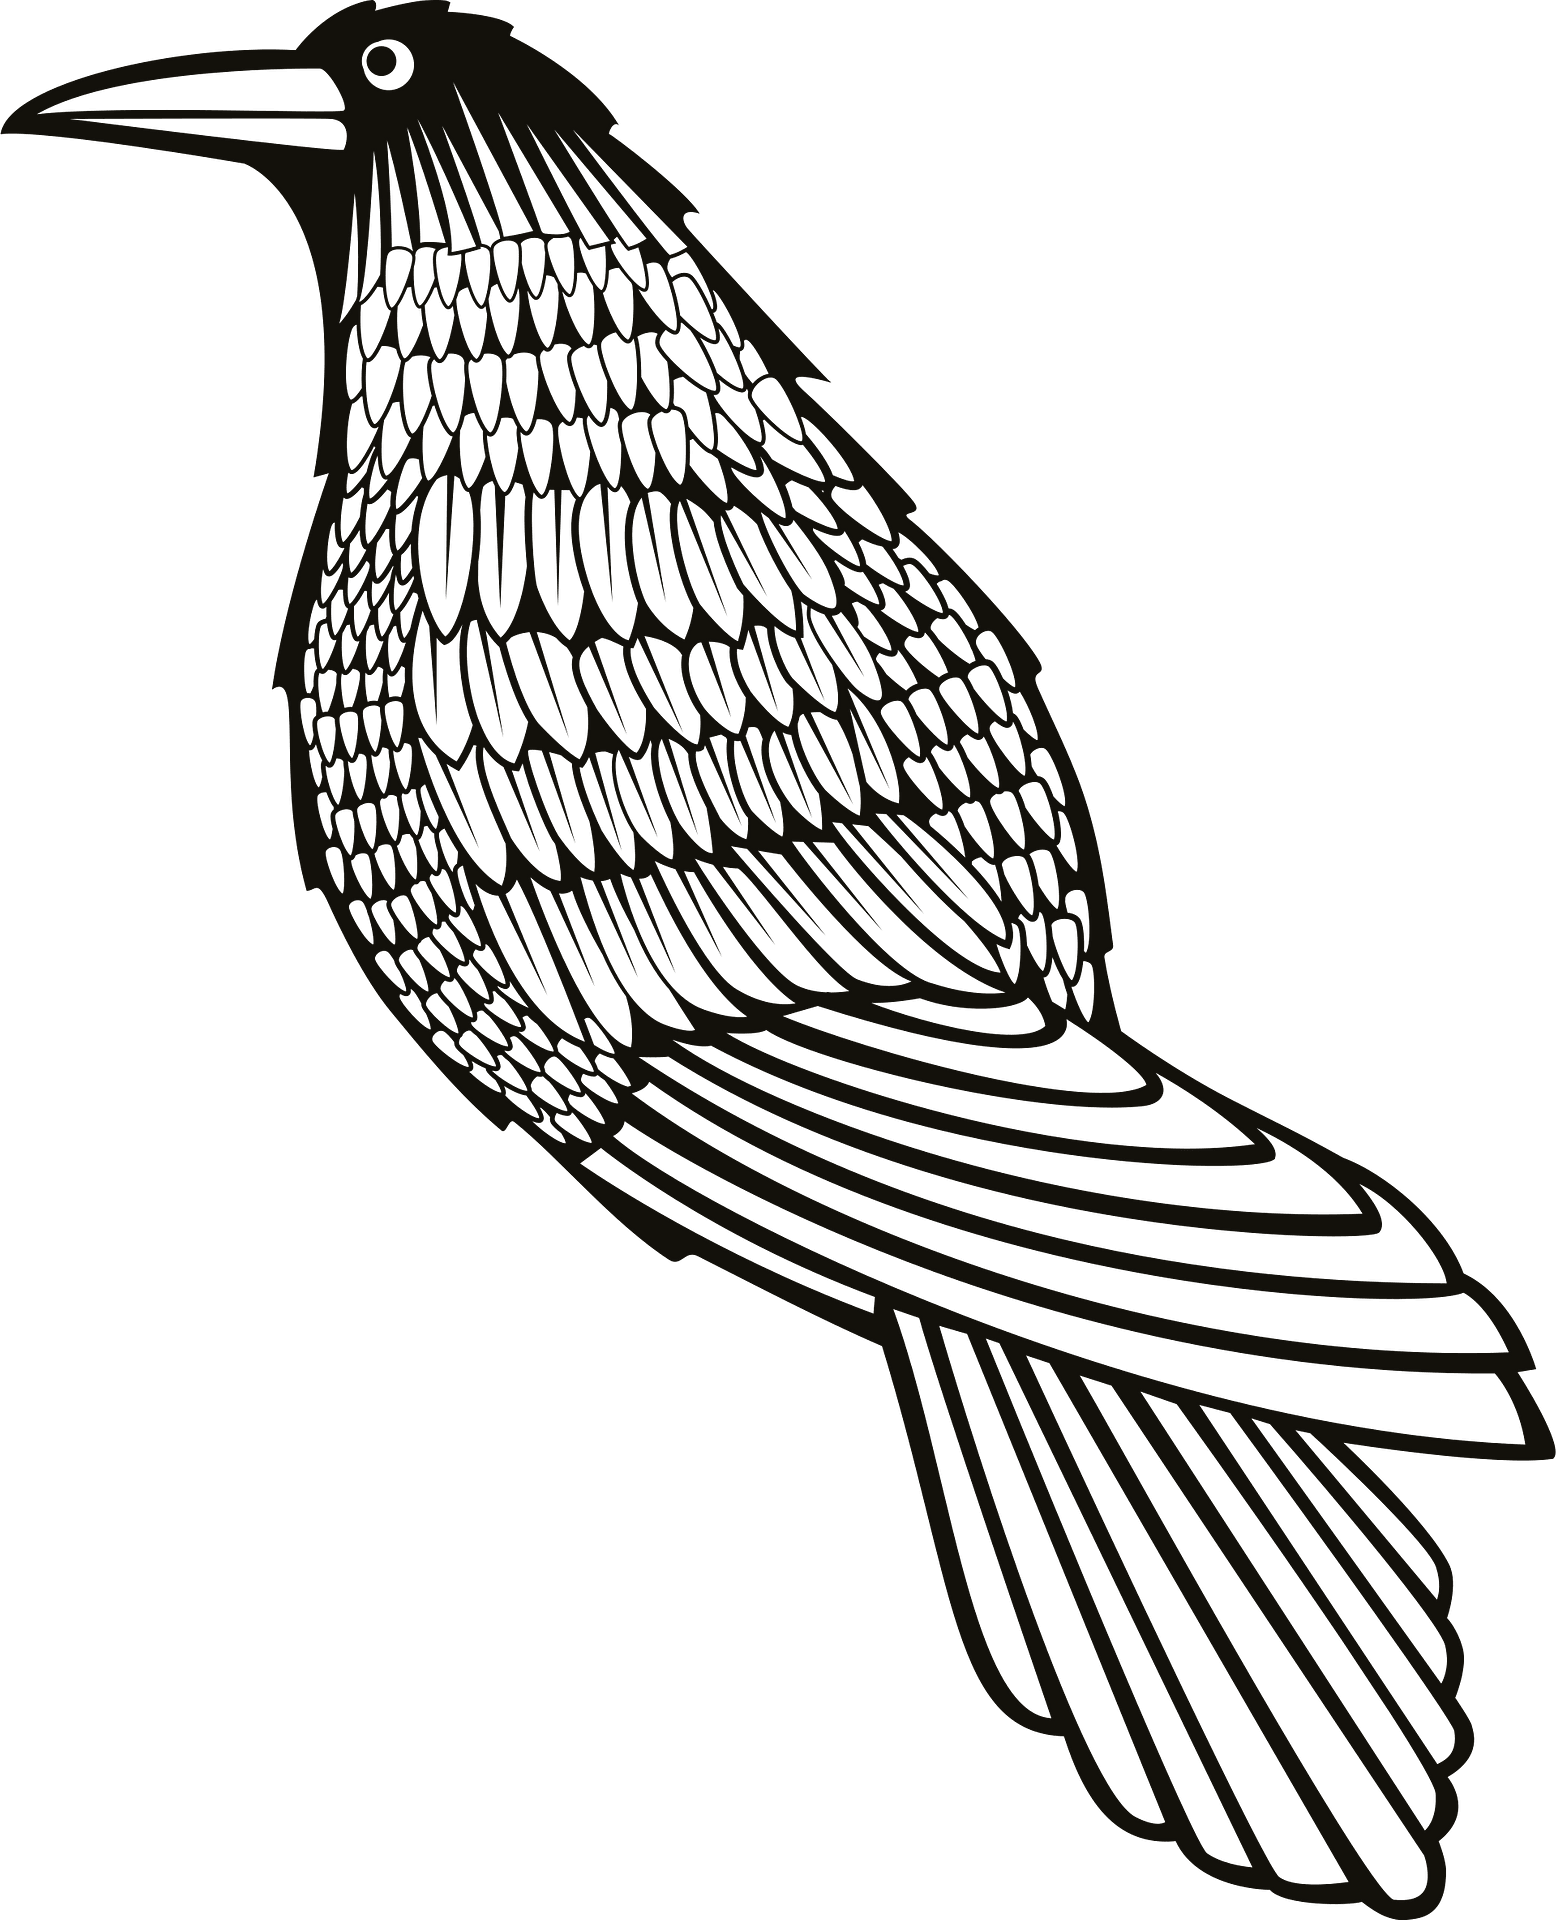 Disegno da colorare di un corvo